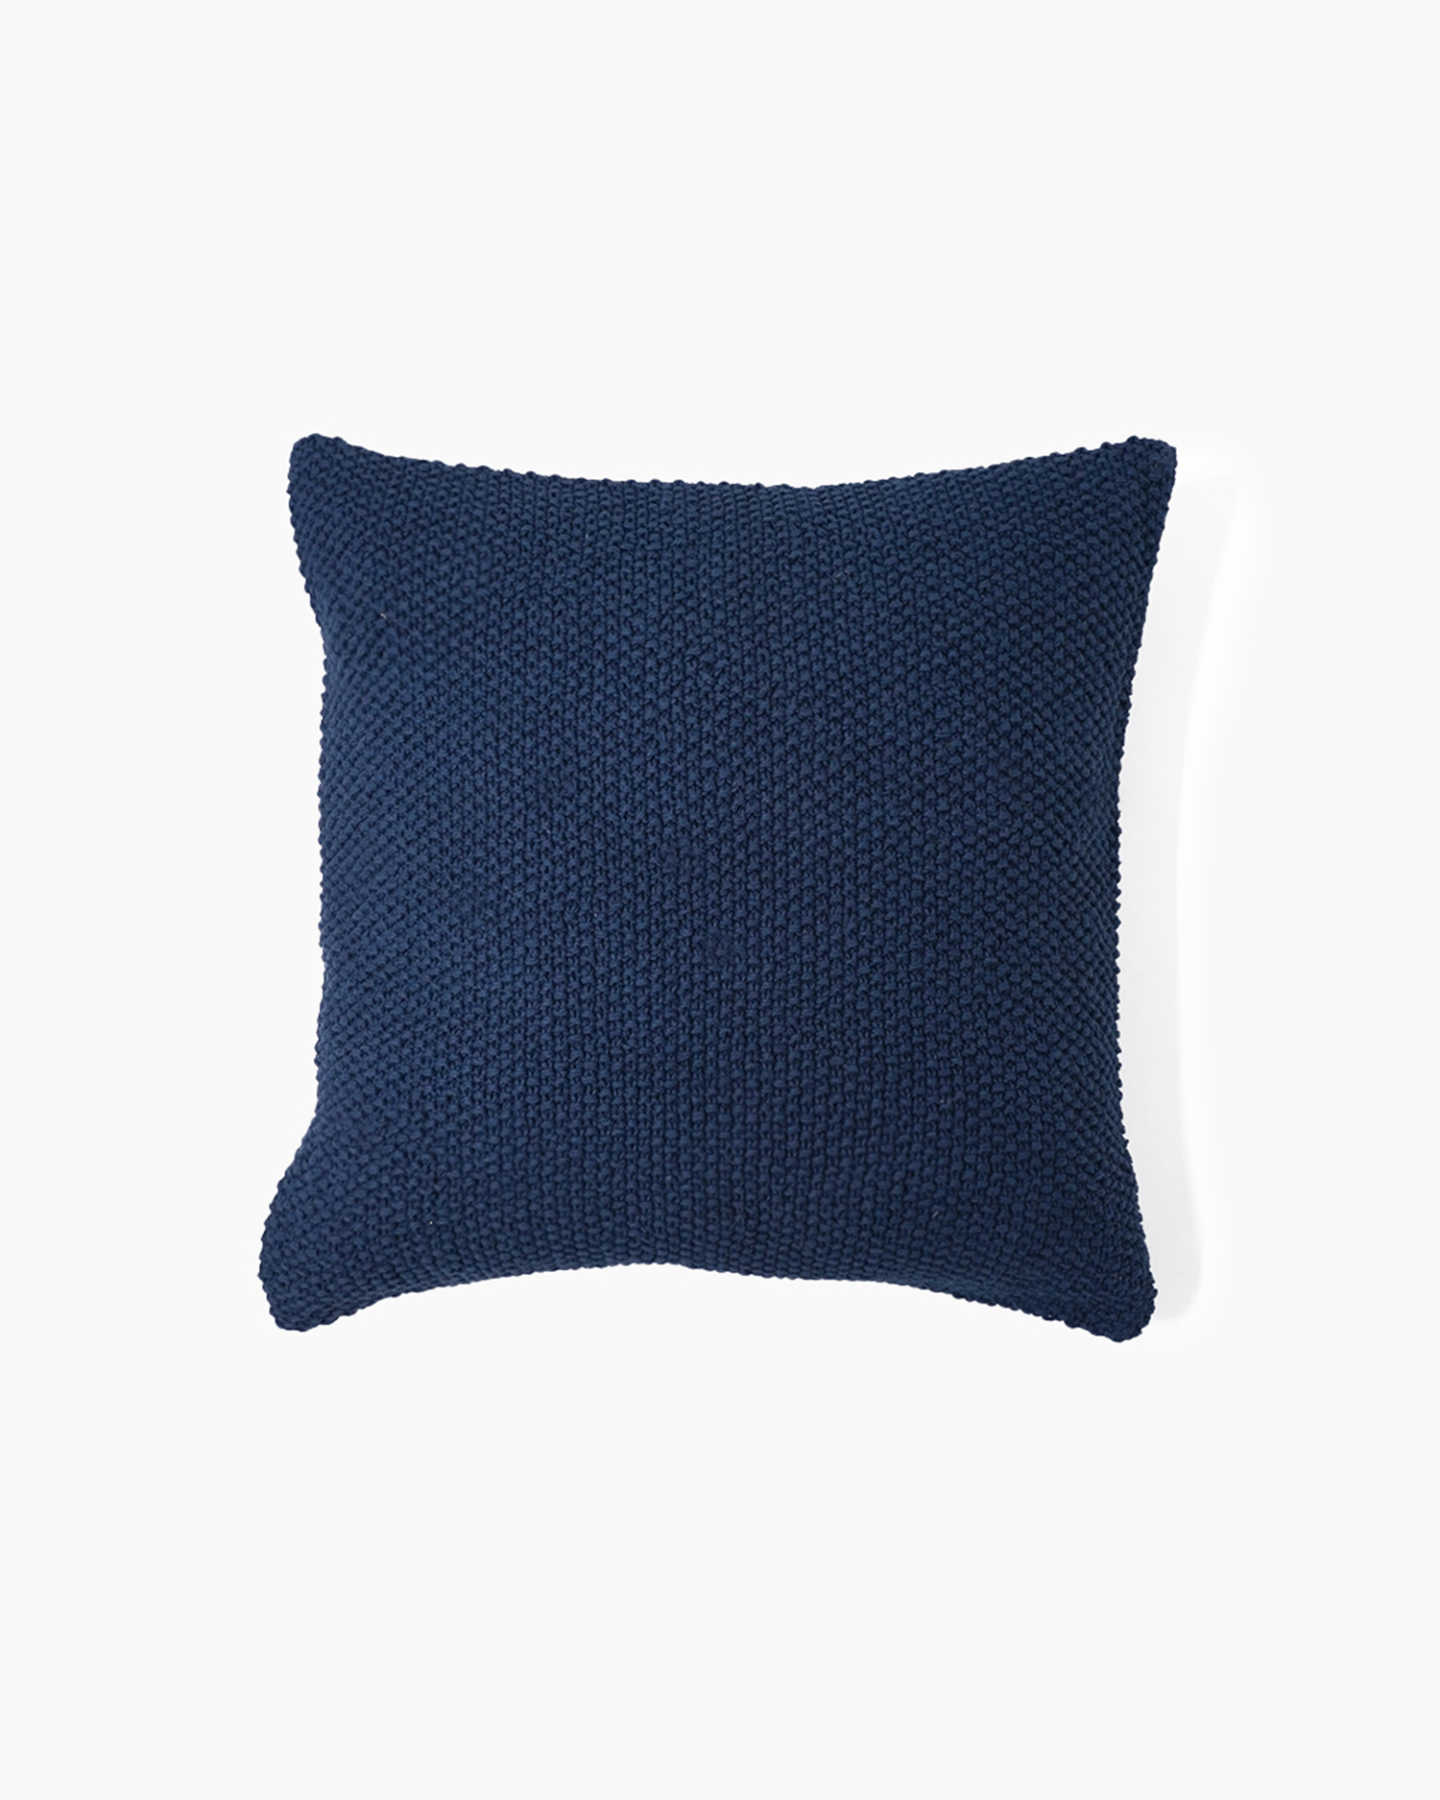 Textured Cotton Pillow Cover - Indigo